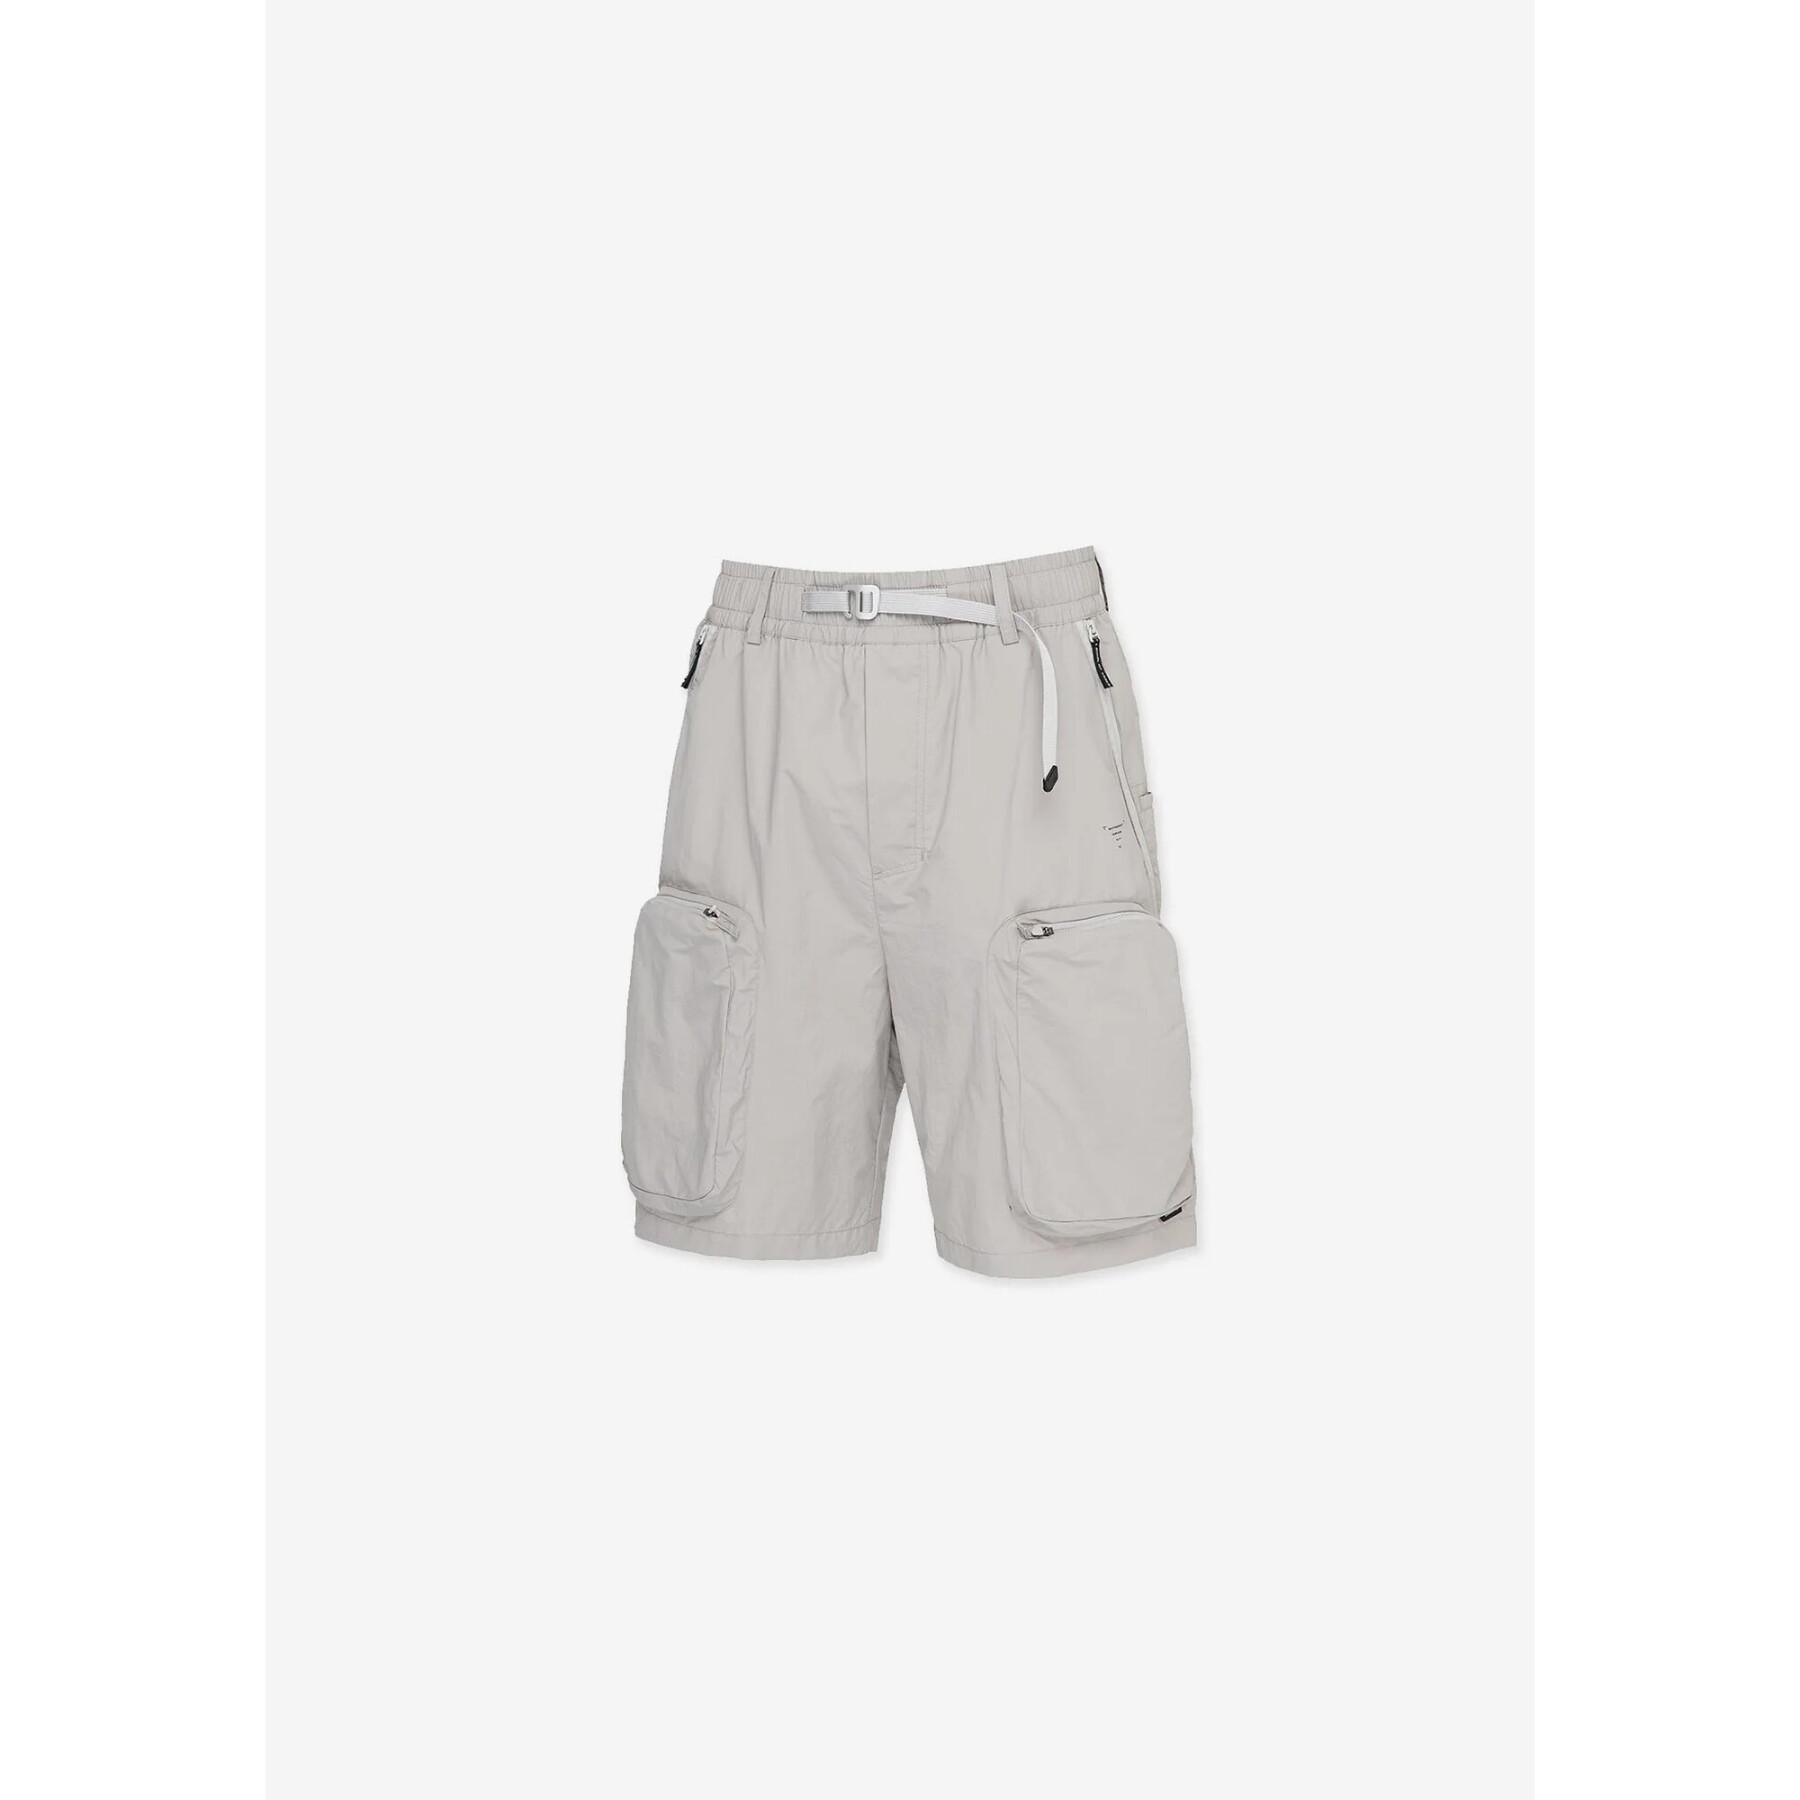 Shorts Krakatau Rm147